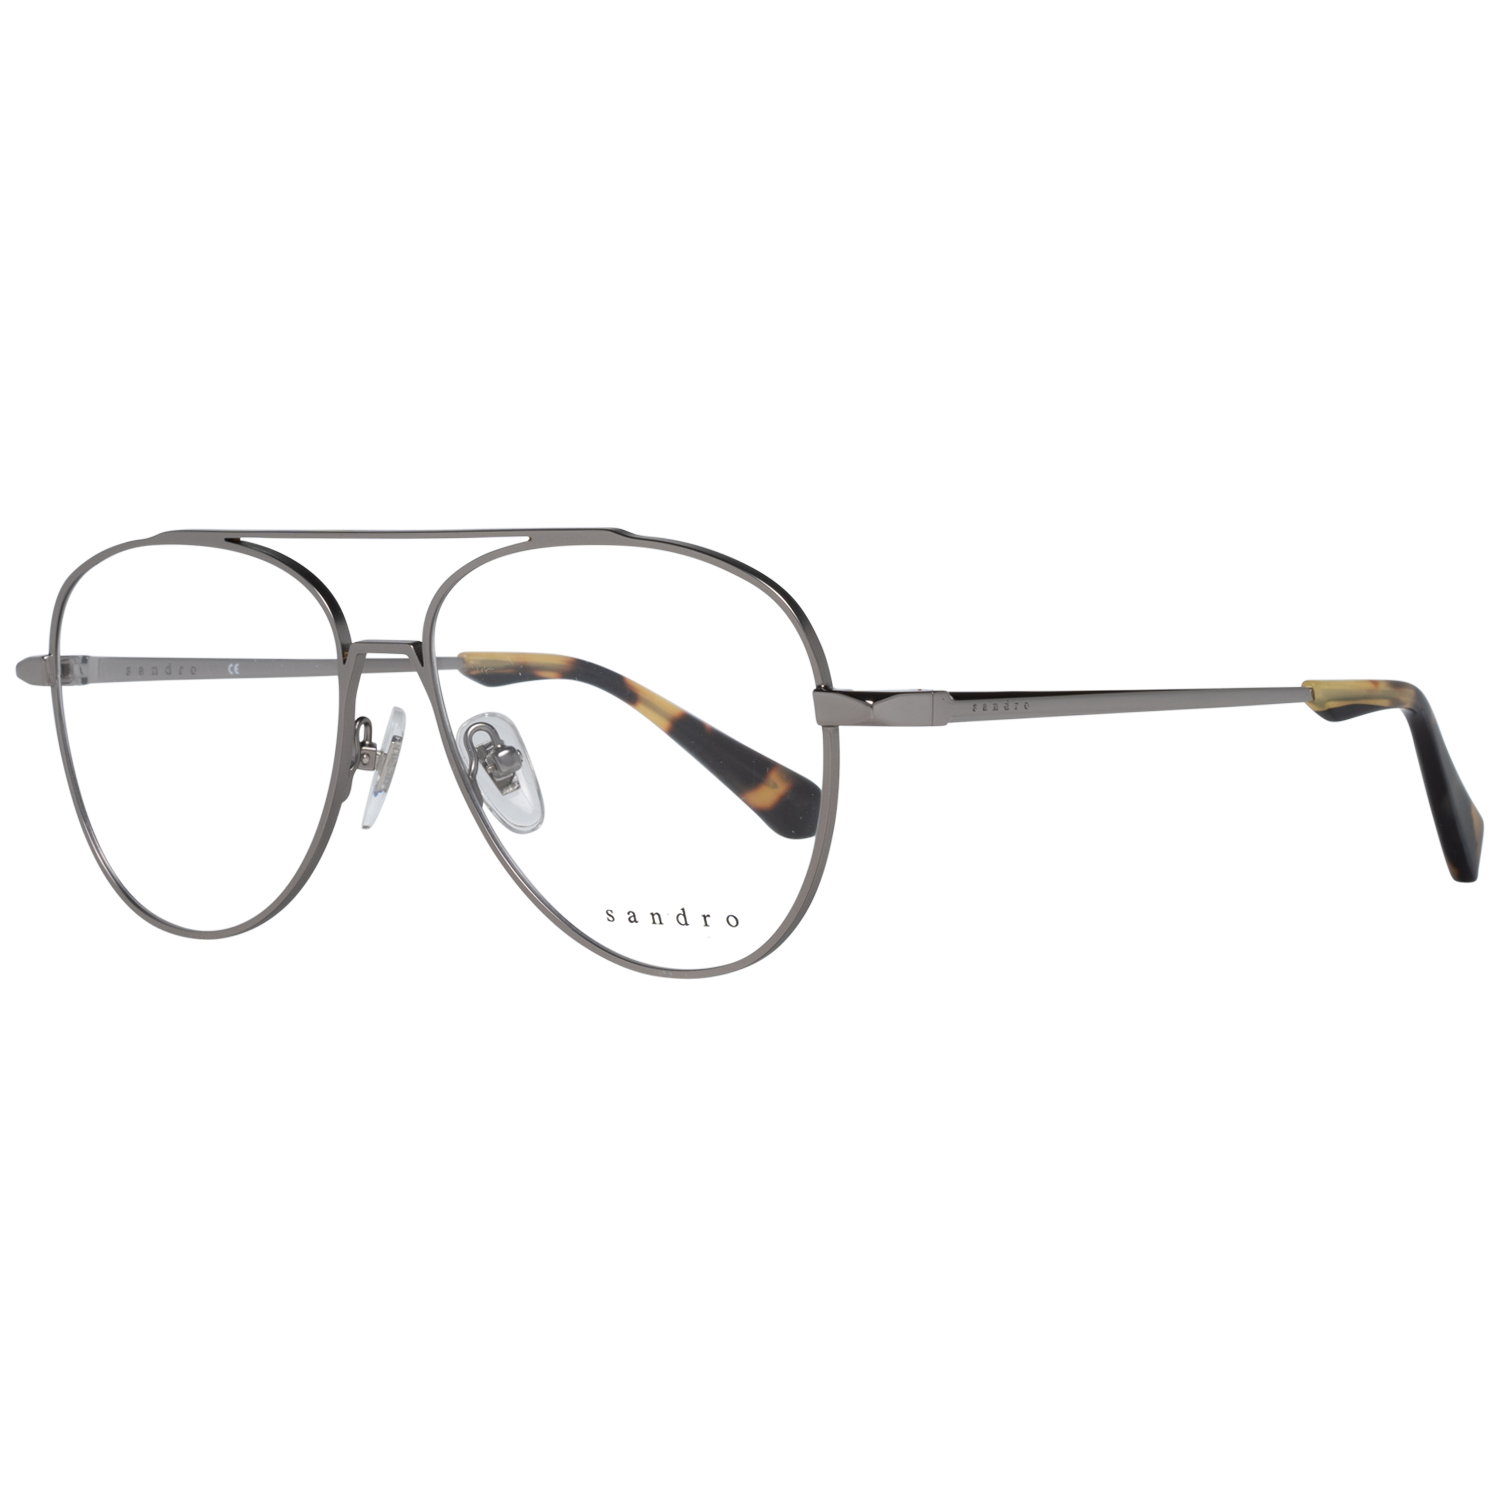 Sandro Frames Sandro Optical Frame SD3001 890 55 Eyeglasses Eyewear UK USA Australia 